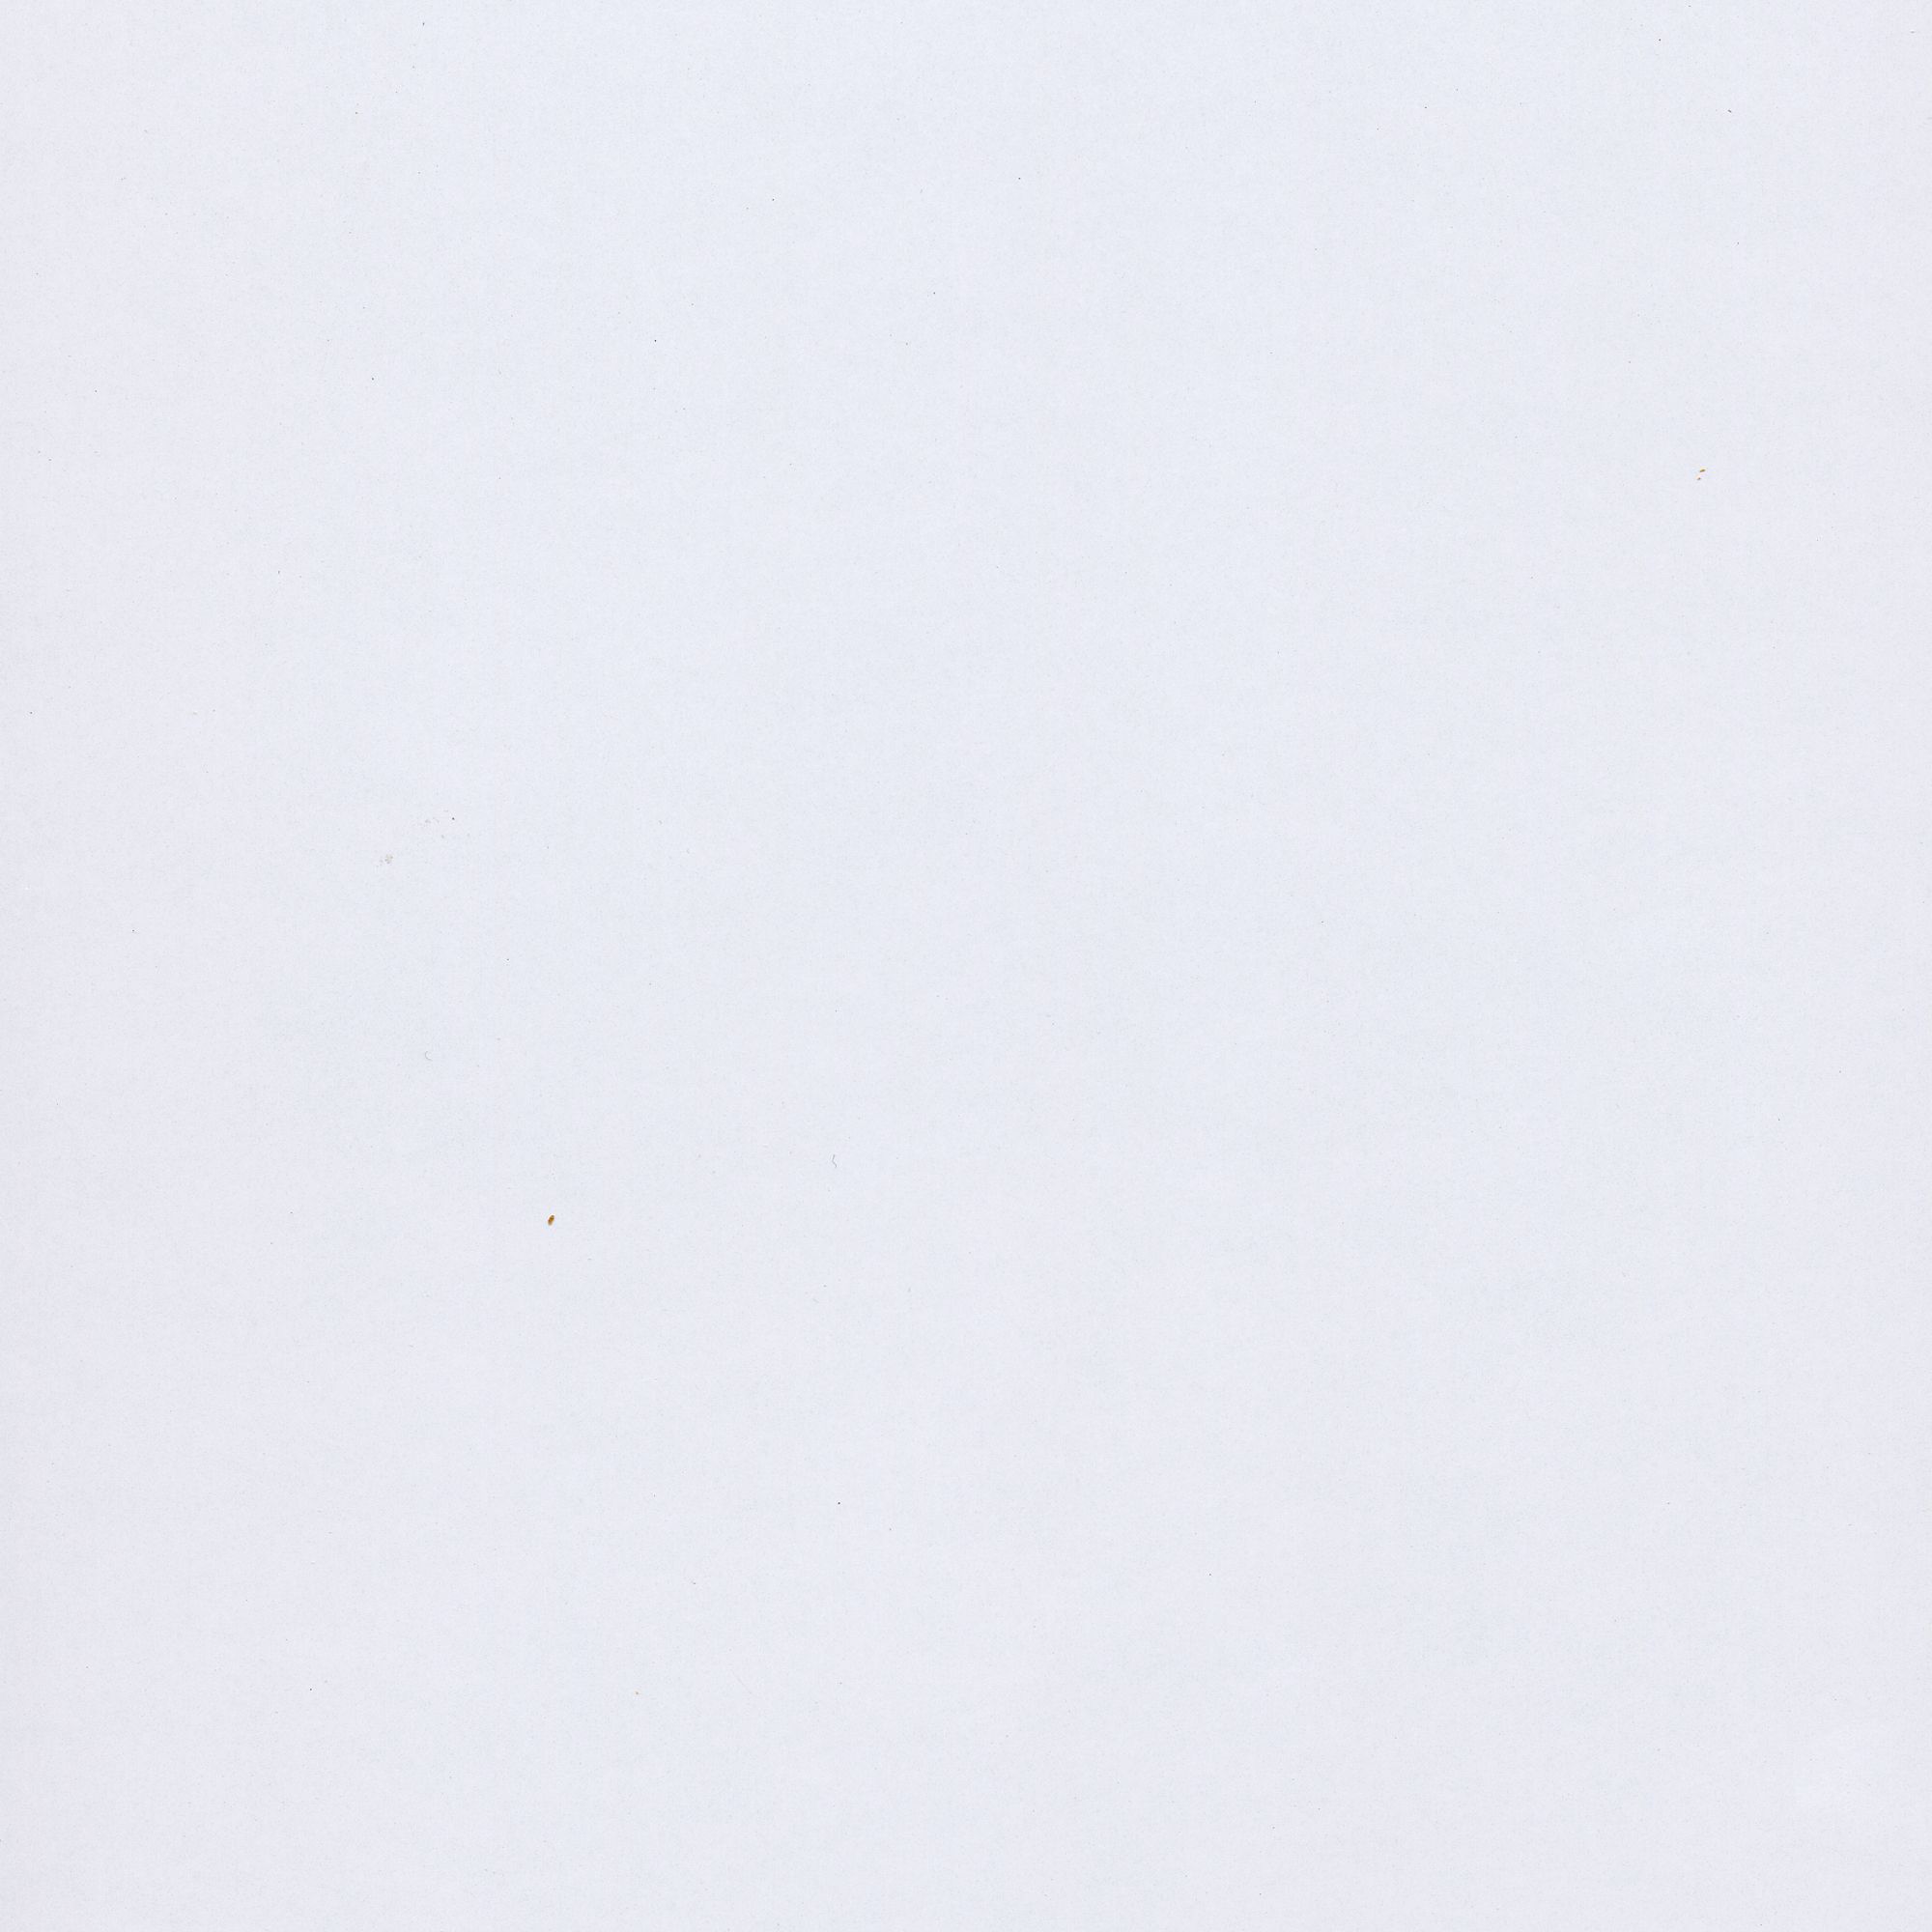 Splashwall Impressions Gloss White gloss Clean cut 2 sided Shower Panel kit (L)2420mm (W)1200mm (T)11mm